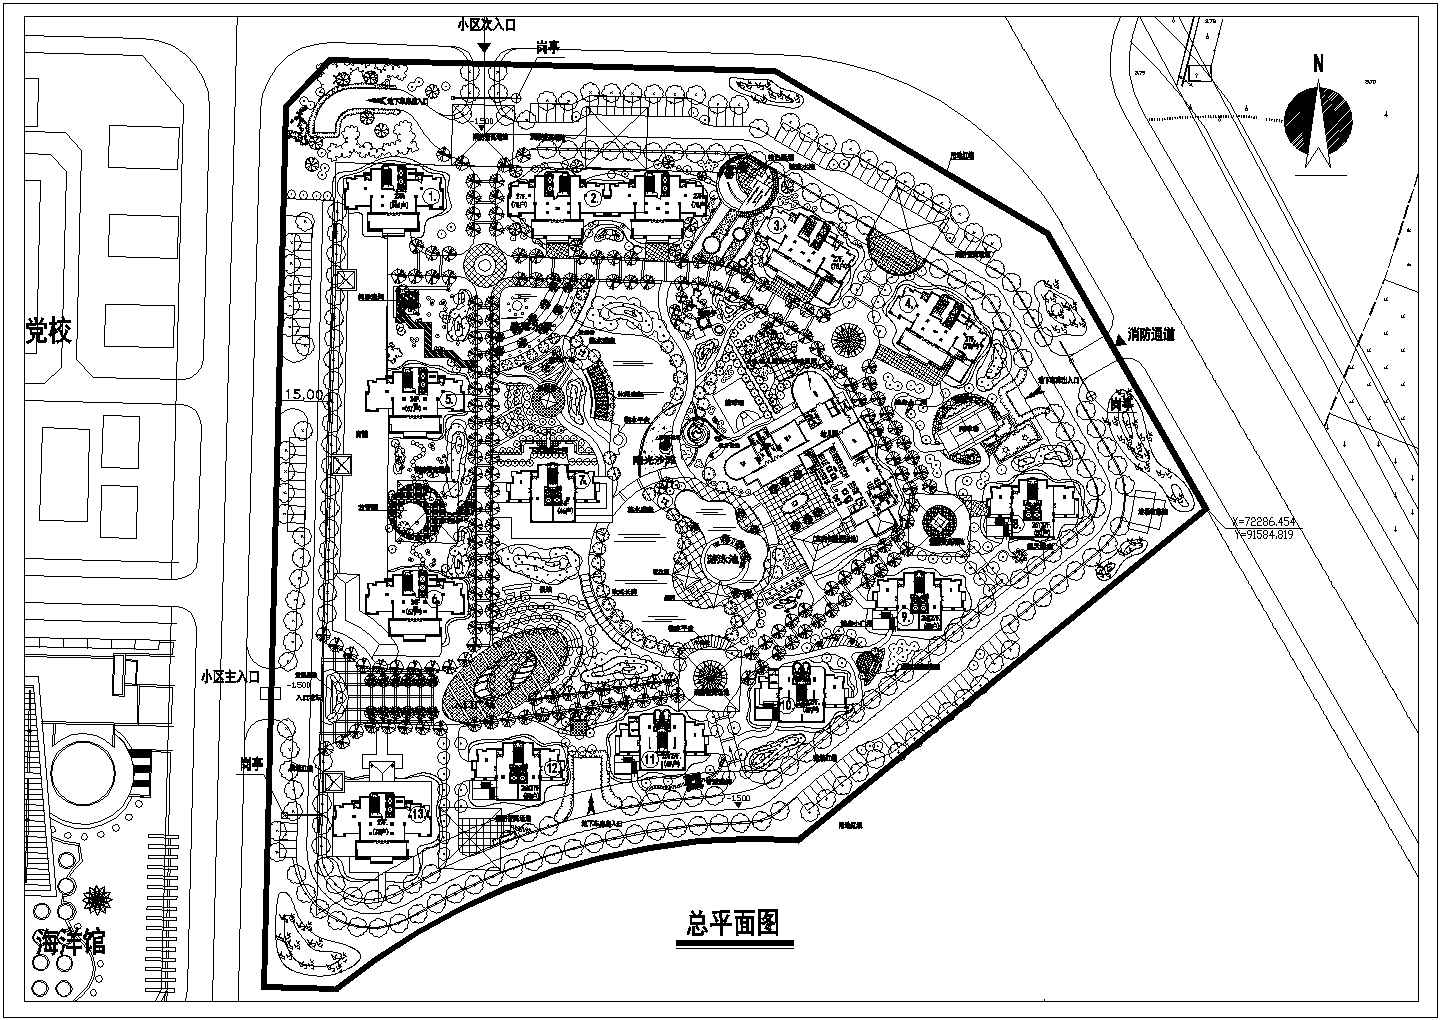 鑫泰小区景观规划总平面图